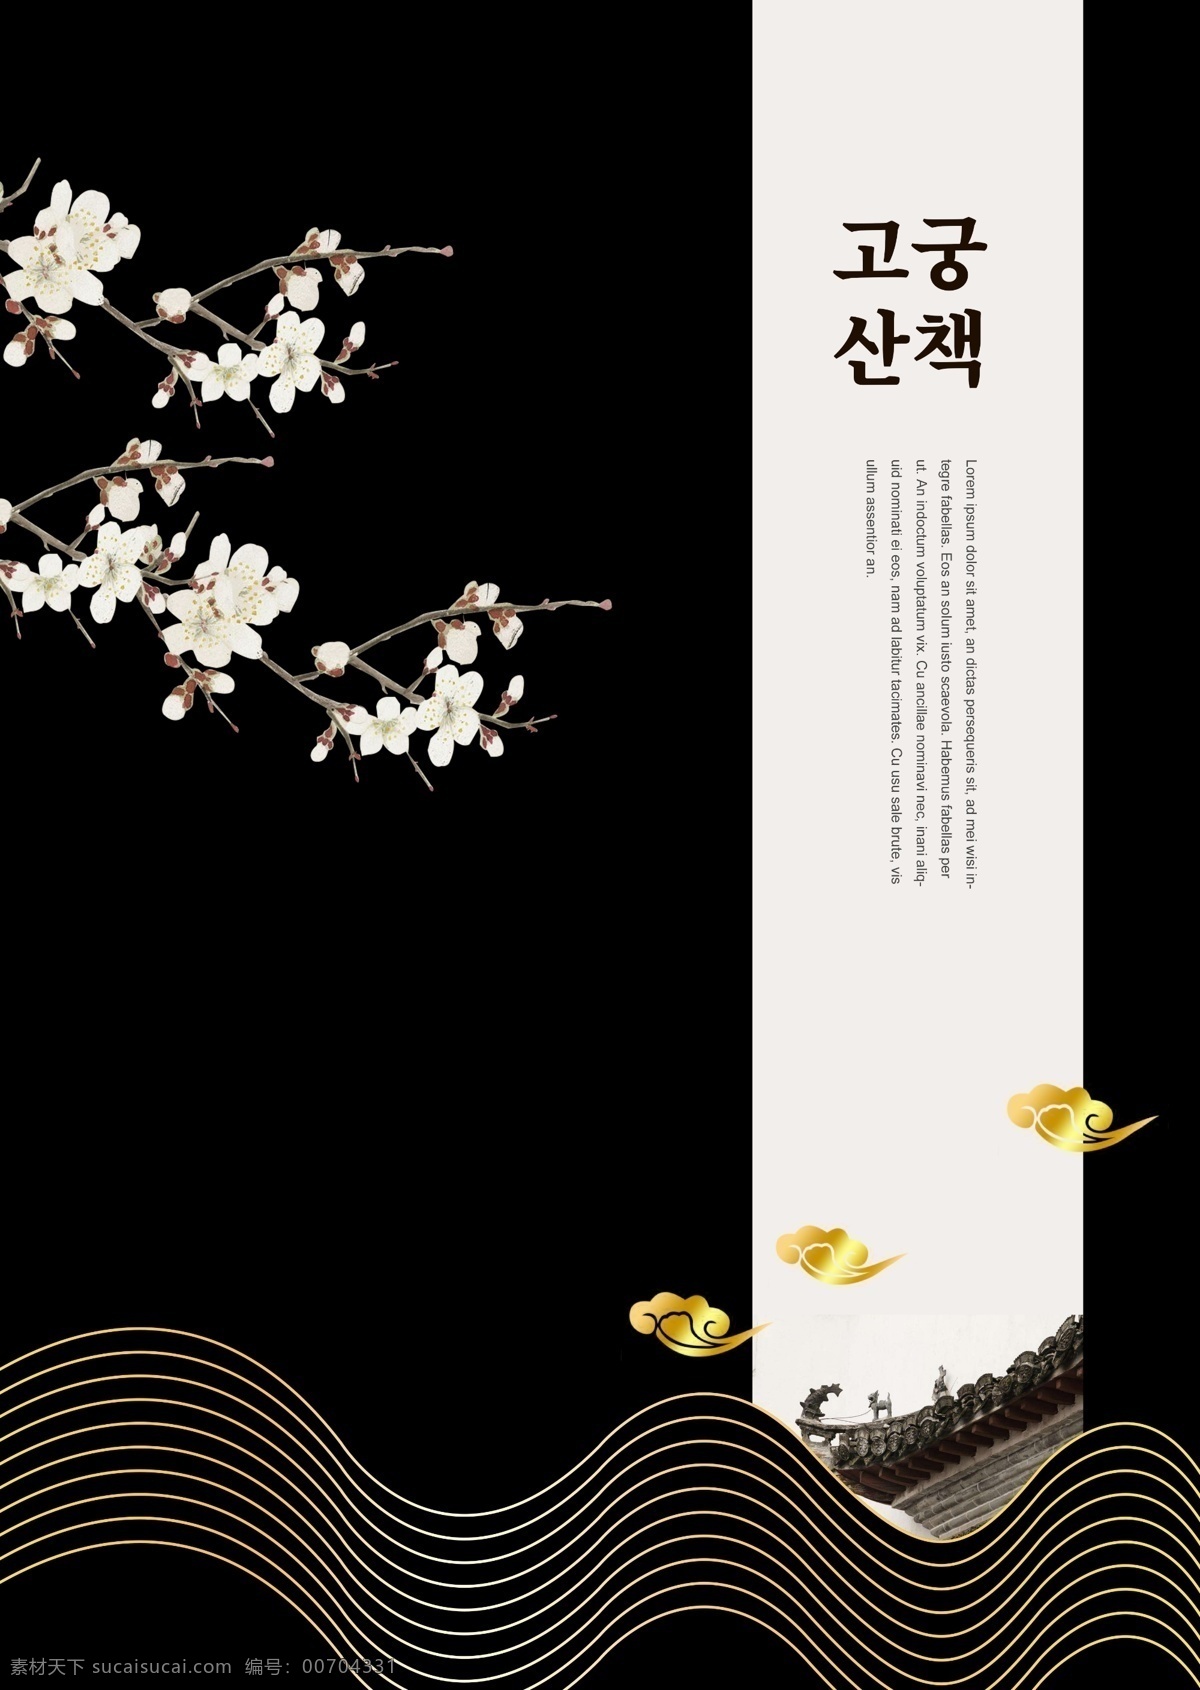 黑白 样式 简单 春天 海报 黑色 白色 图案 欢迎春天 花枝 金 朝鲜的 波浪 花卉 梅花